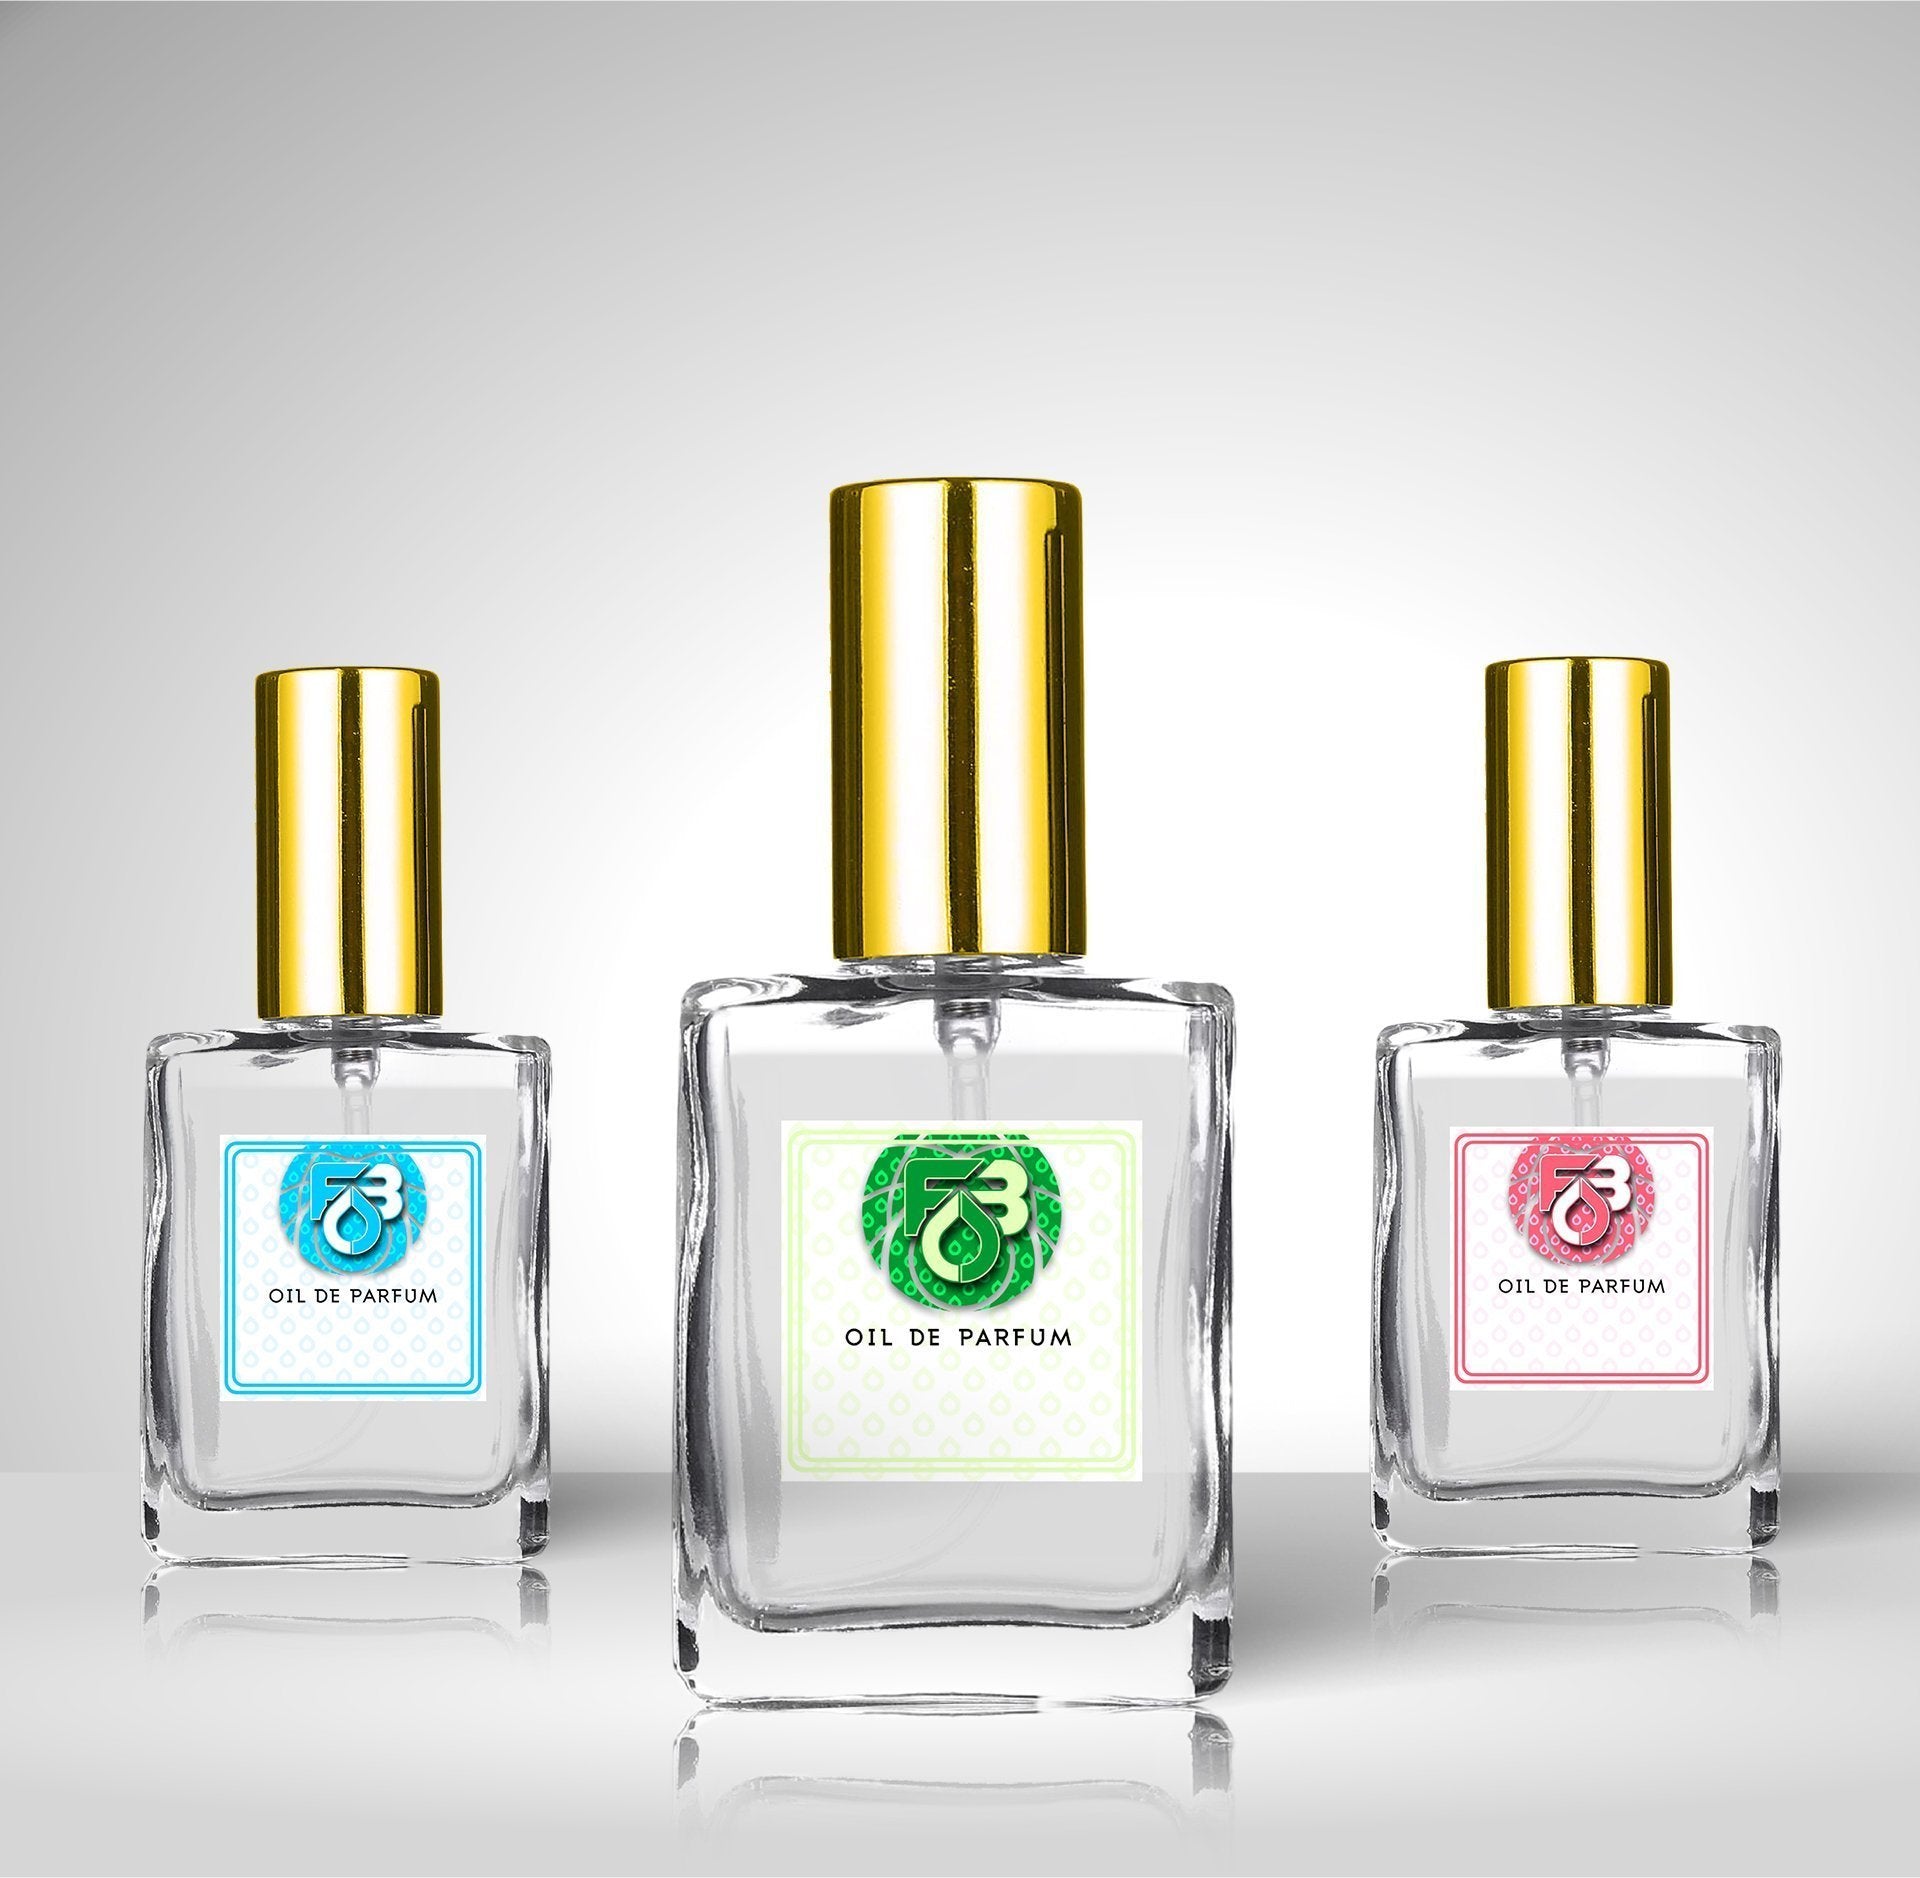 Compare Aroma to Dubai Platinum®